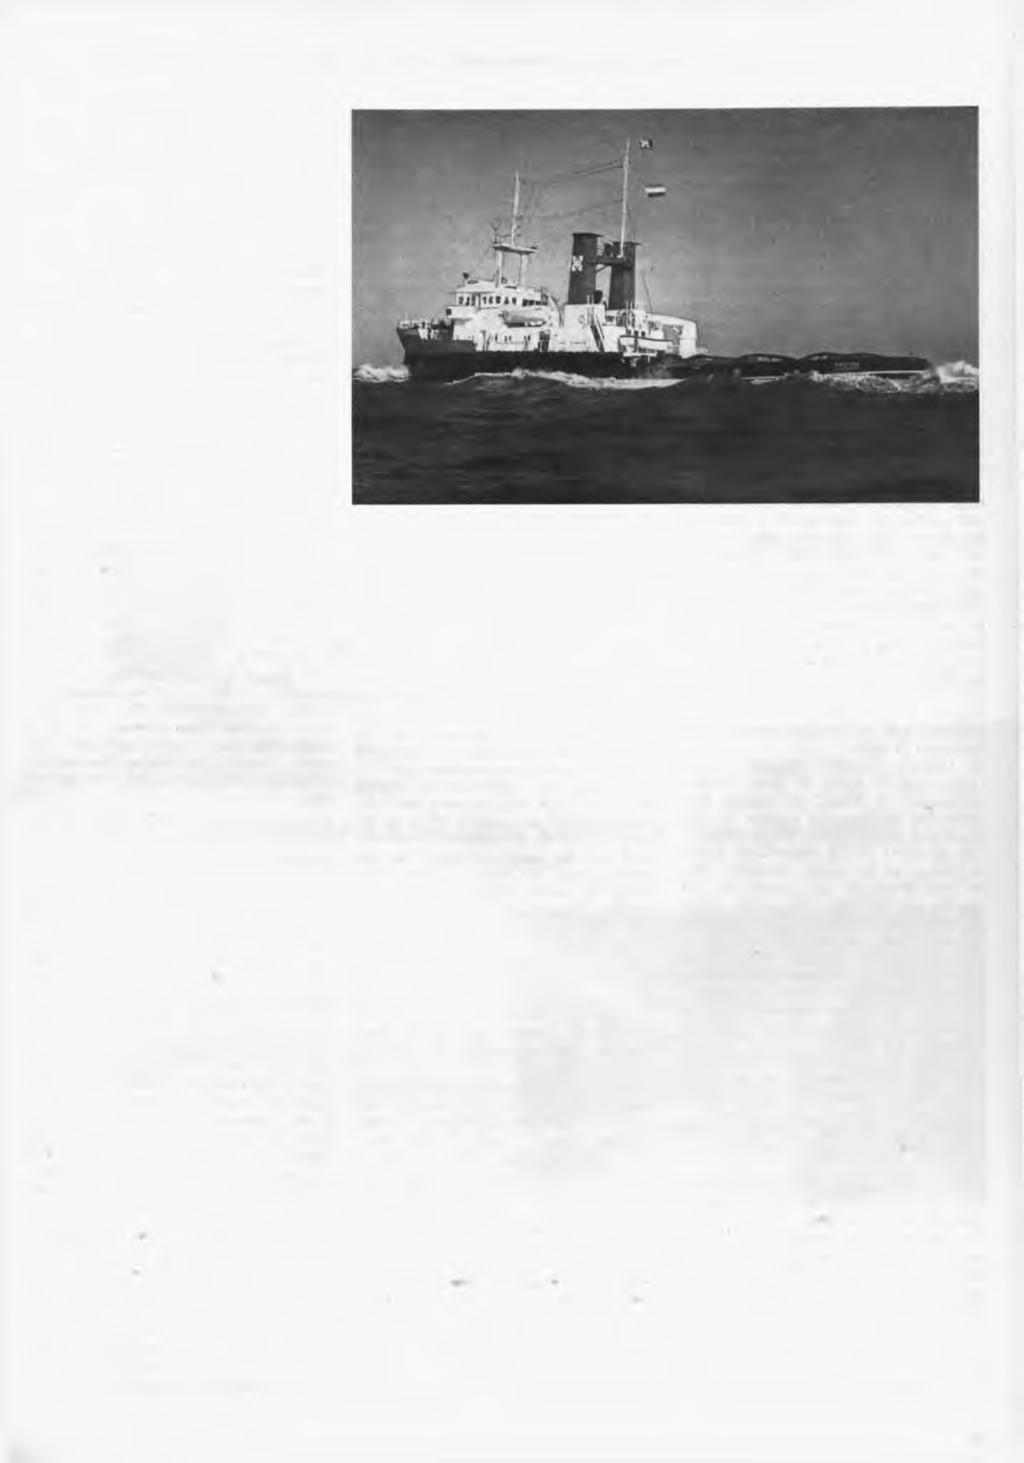 ZEESLEEPBOOT POOLZEE IN DIENST GESTELD O p dinsdag 26 januari 1971 heeft L. Sm it & C o s In tern atio n ale Sleepdienst de zeesleepboot P oolzee aan zijn vloot toegevoegd.